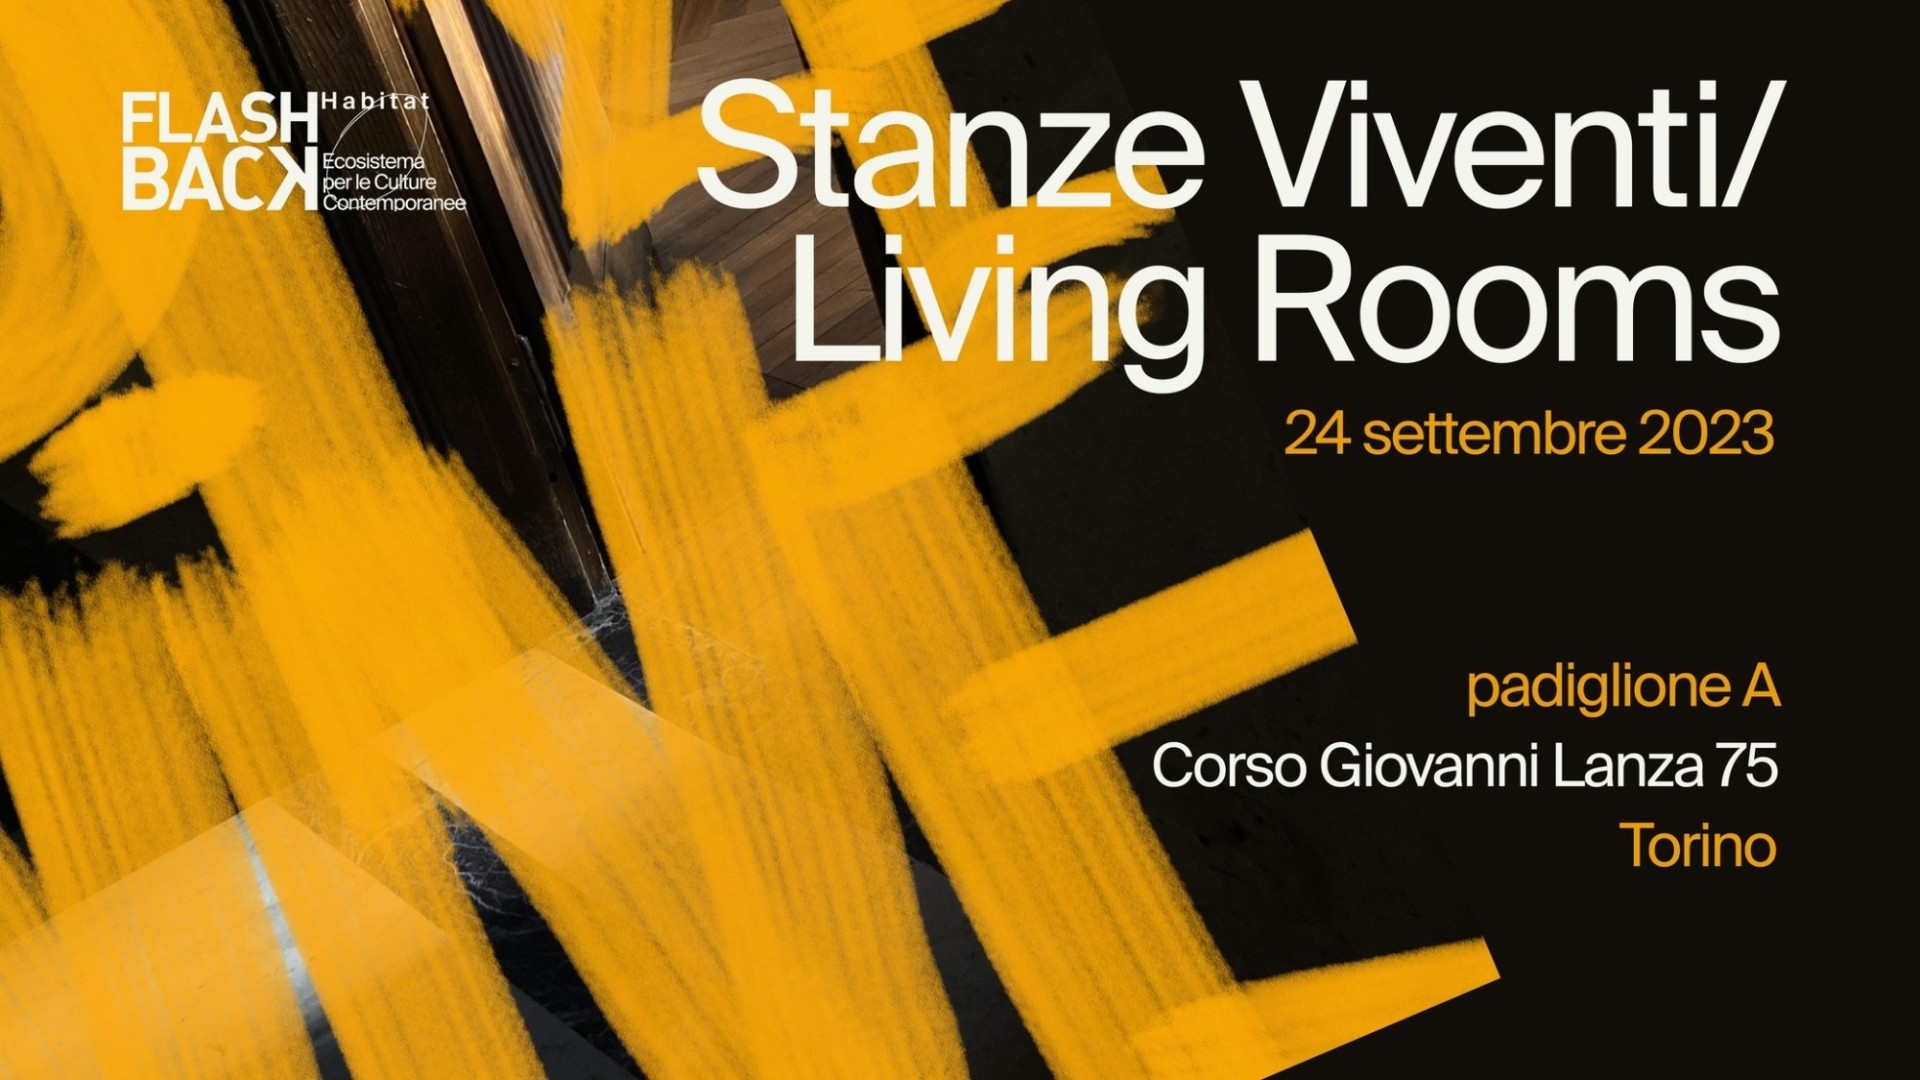 Stanze Viventi / Living Rooms